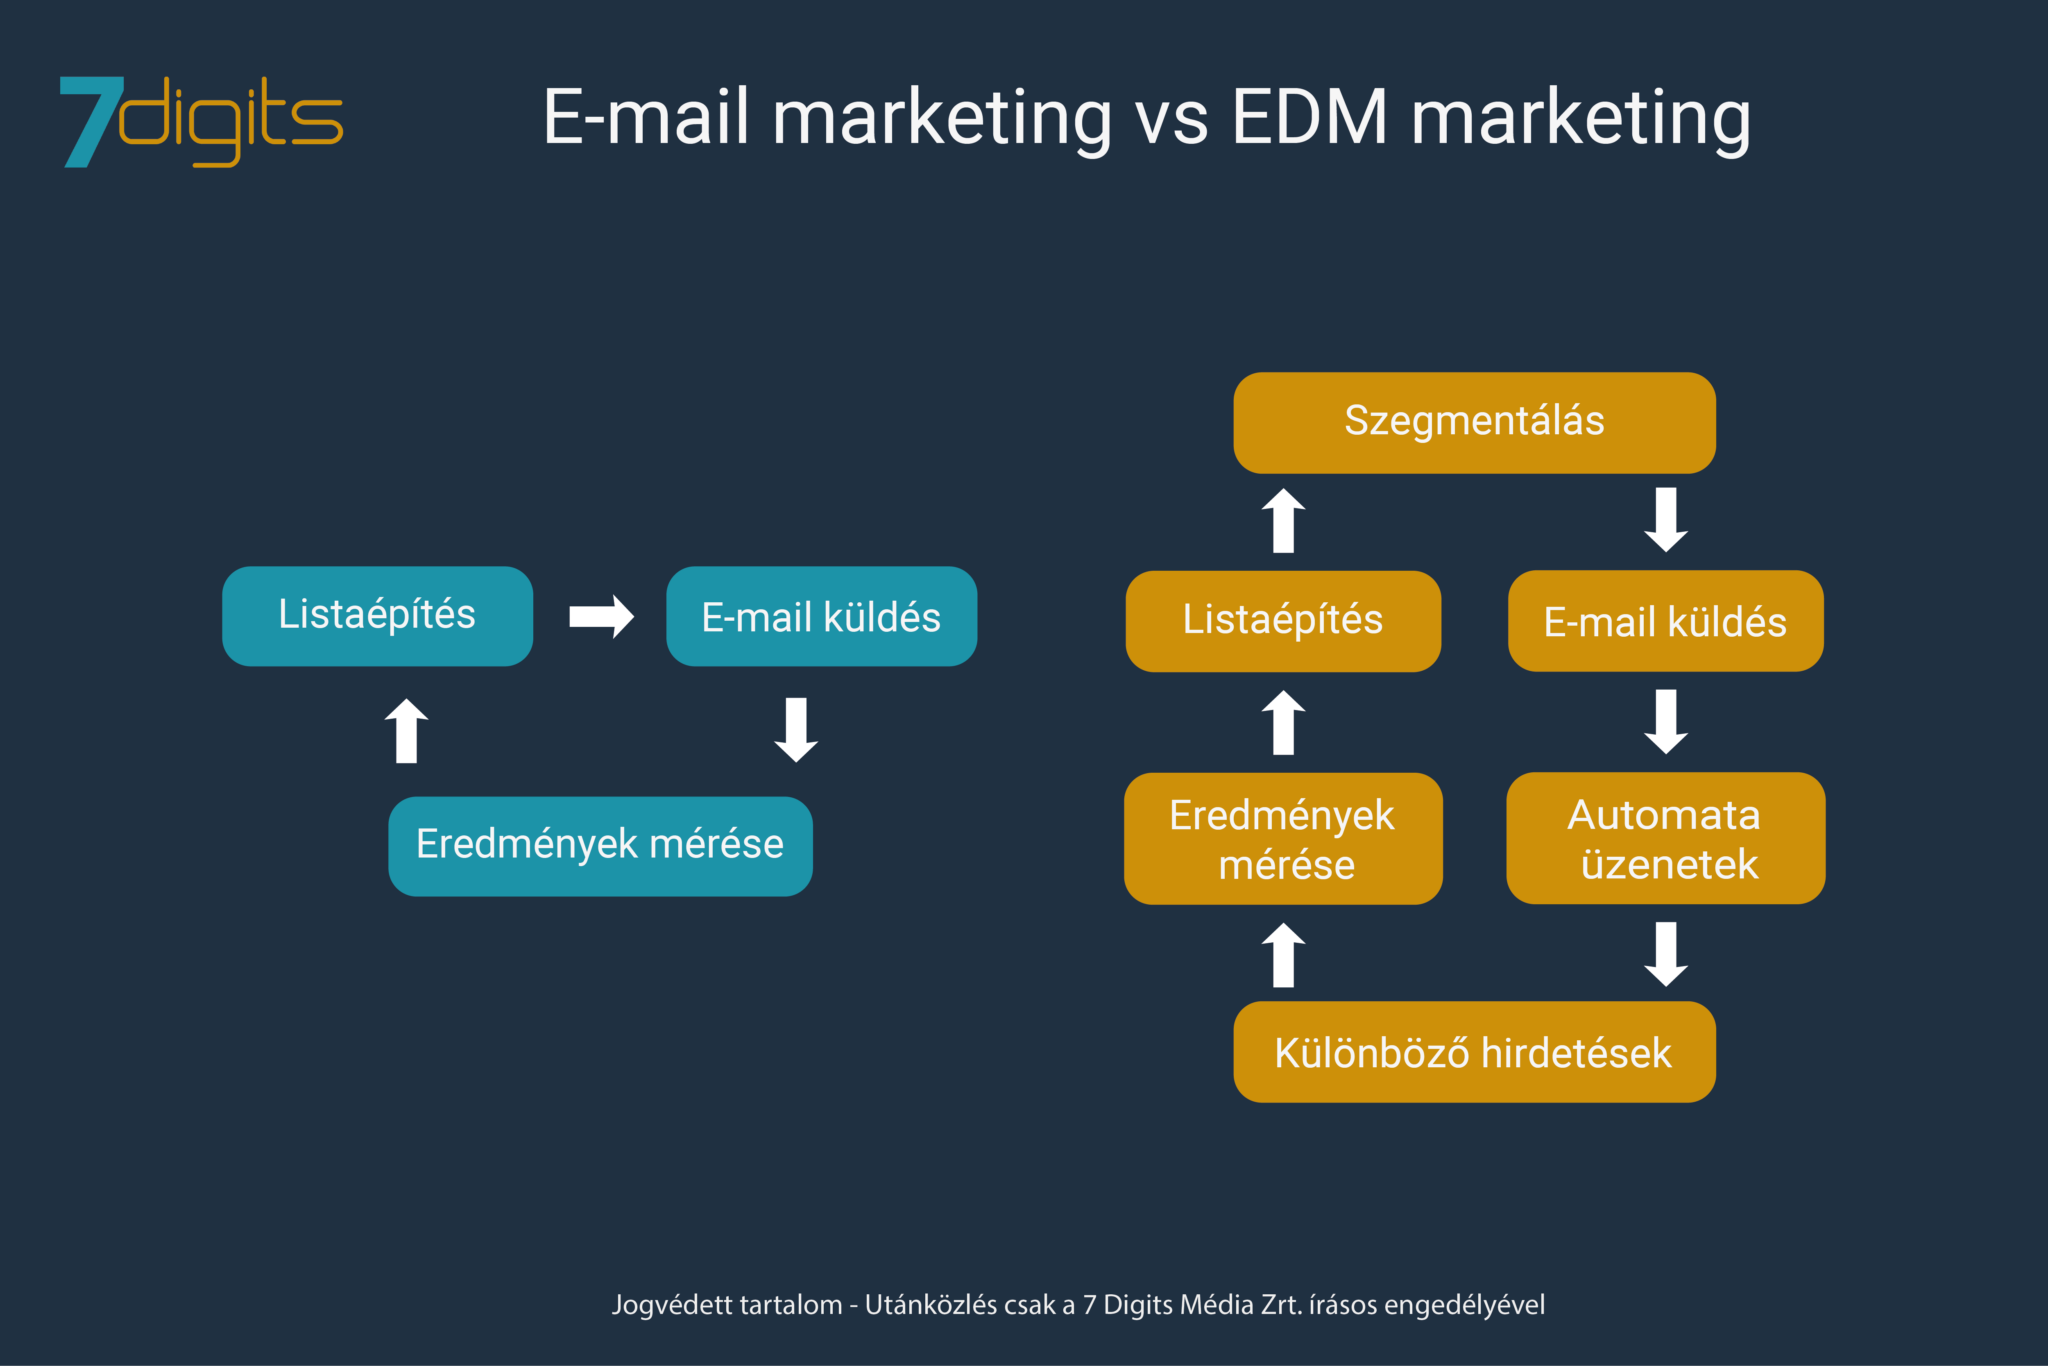 E-mail marketing és az EDM jelentésének összehasonlítása